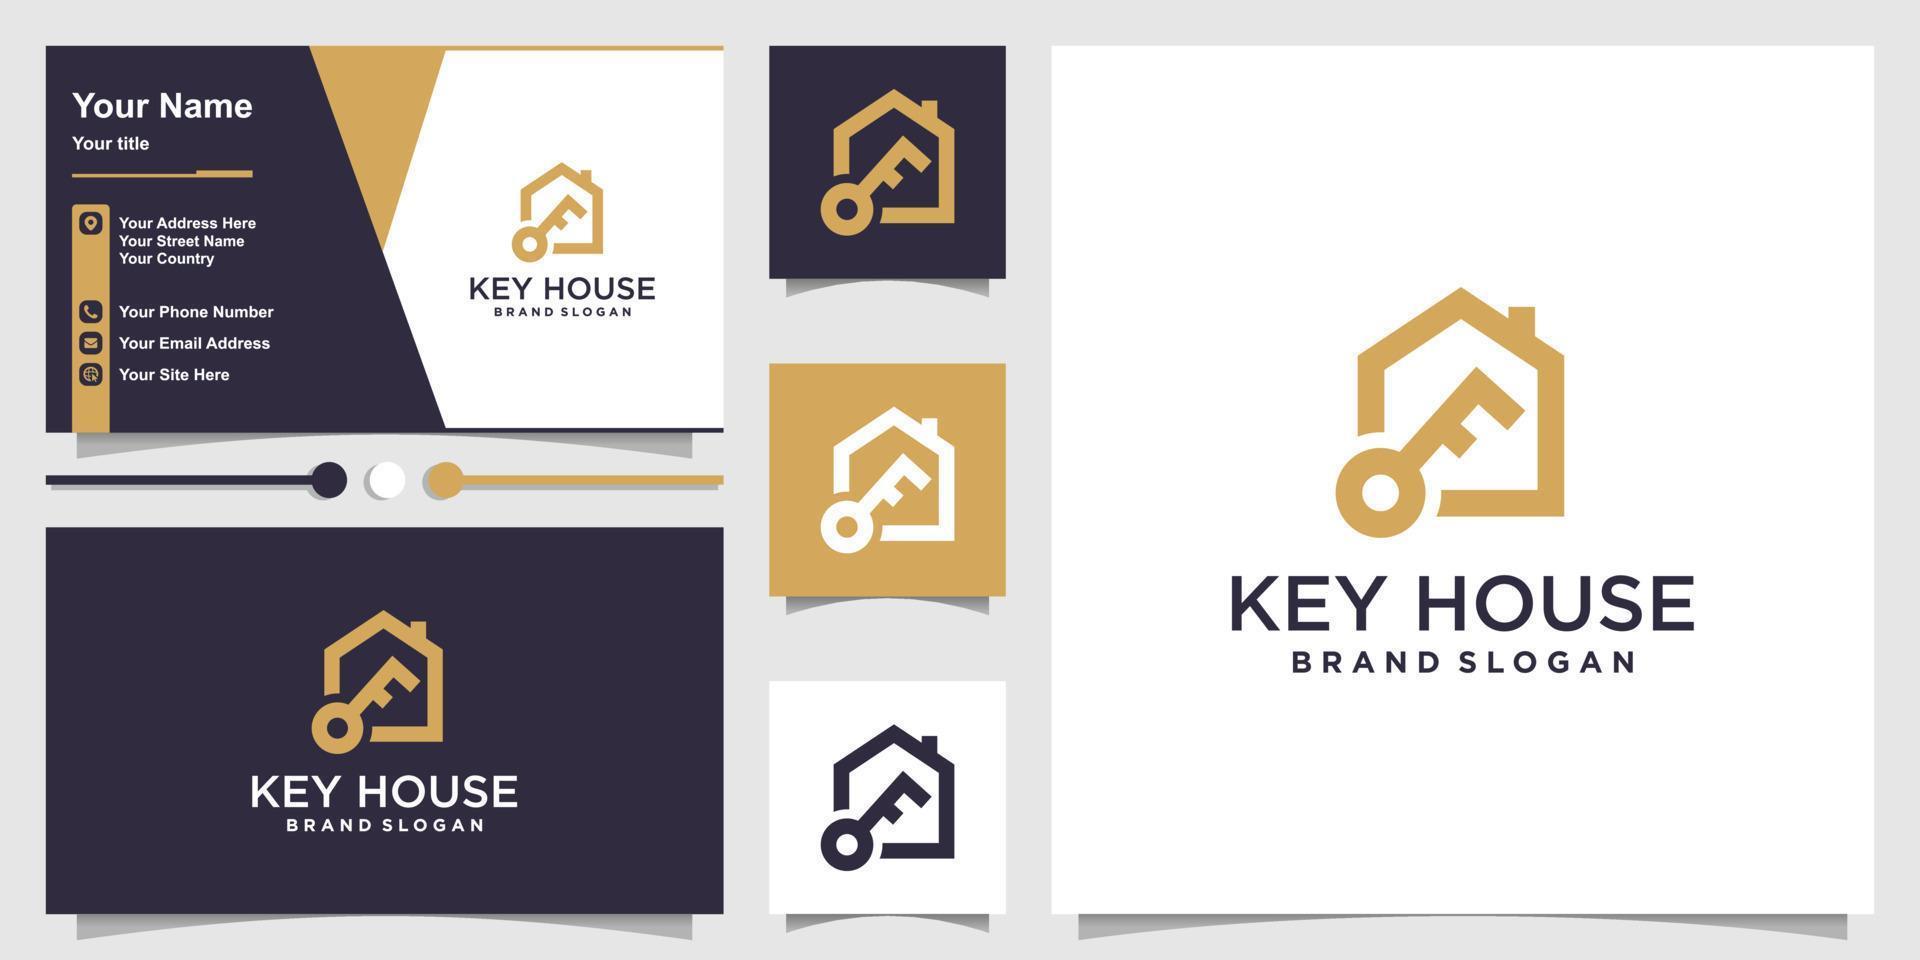 design de logotipo de casa com vetor premium de conceito de elemento-chave criativo